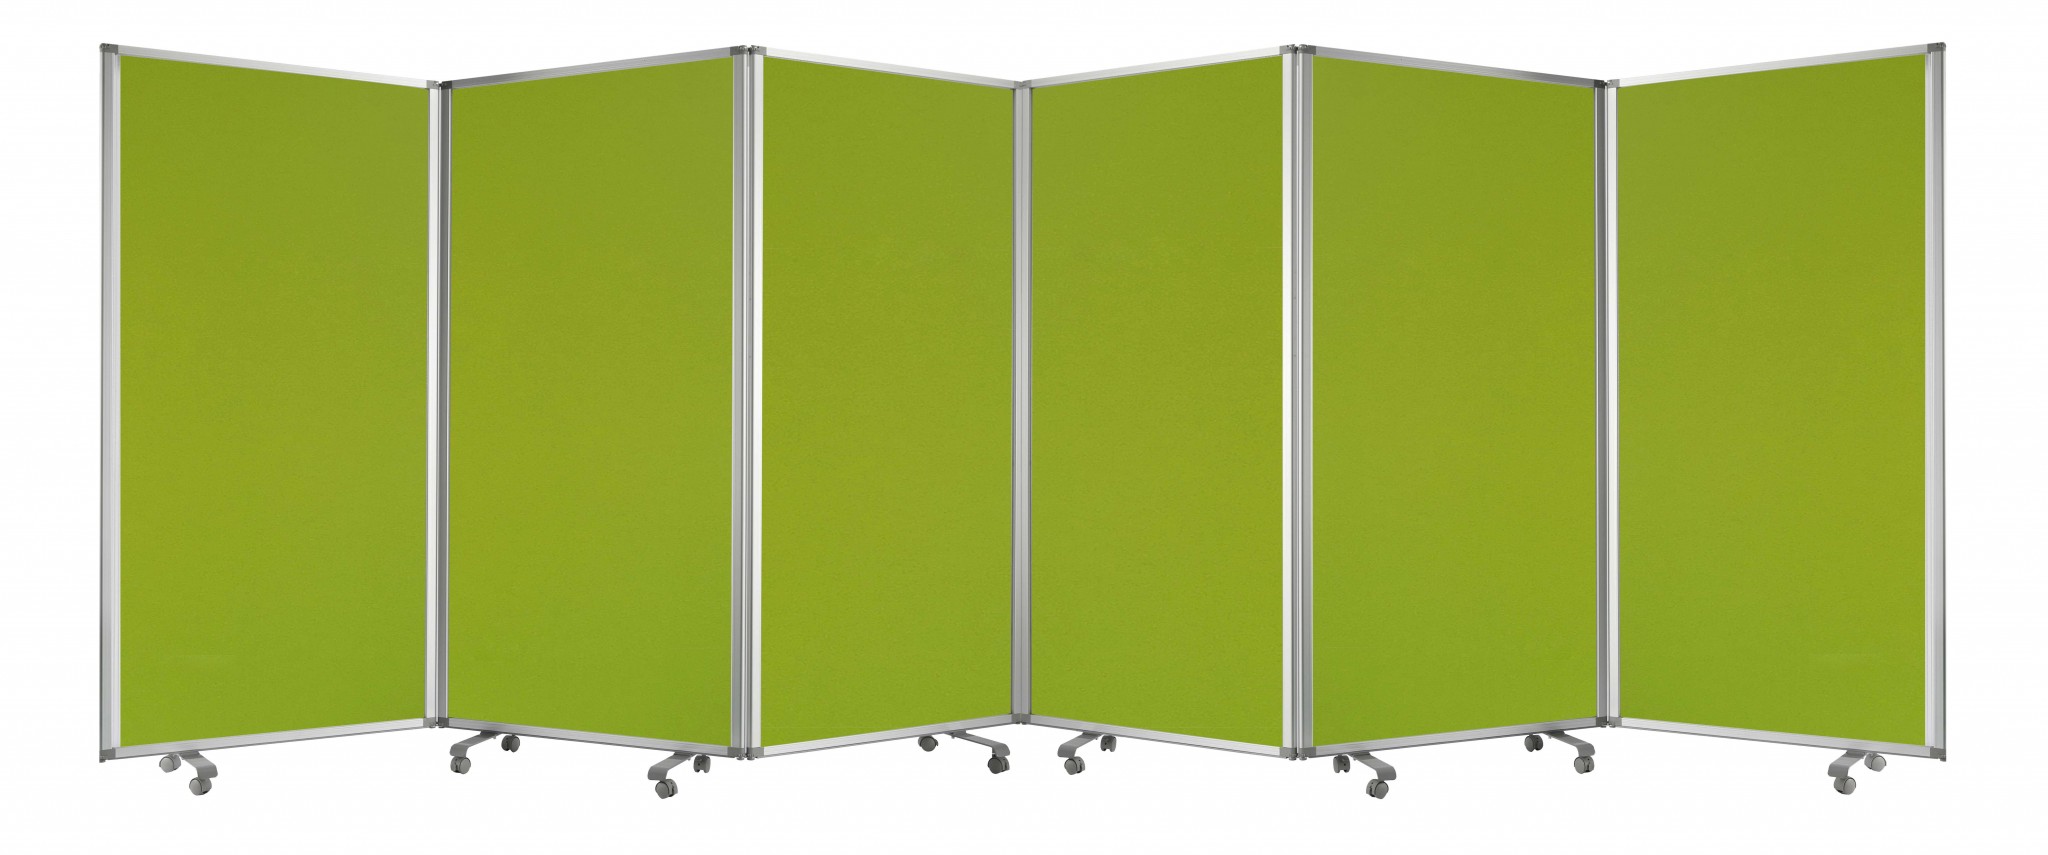 212" x 1" x 71" Green, Metal, 6 Panel, Screen